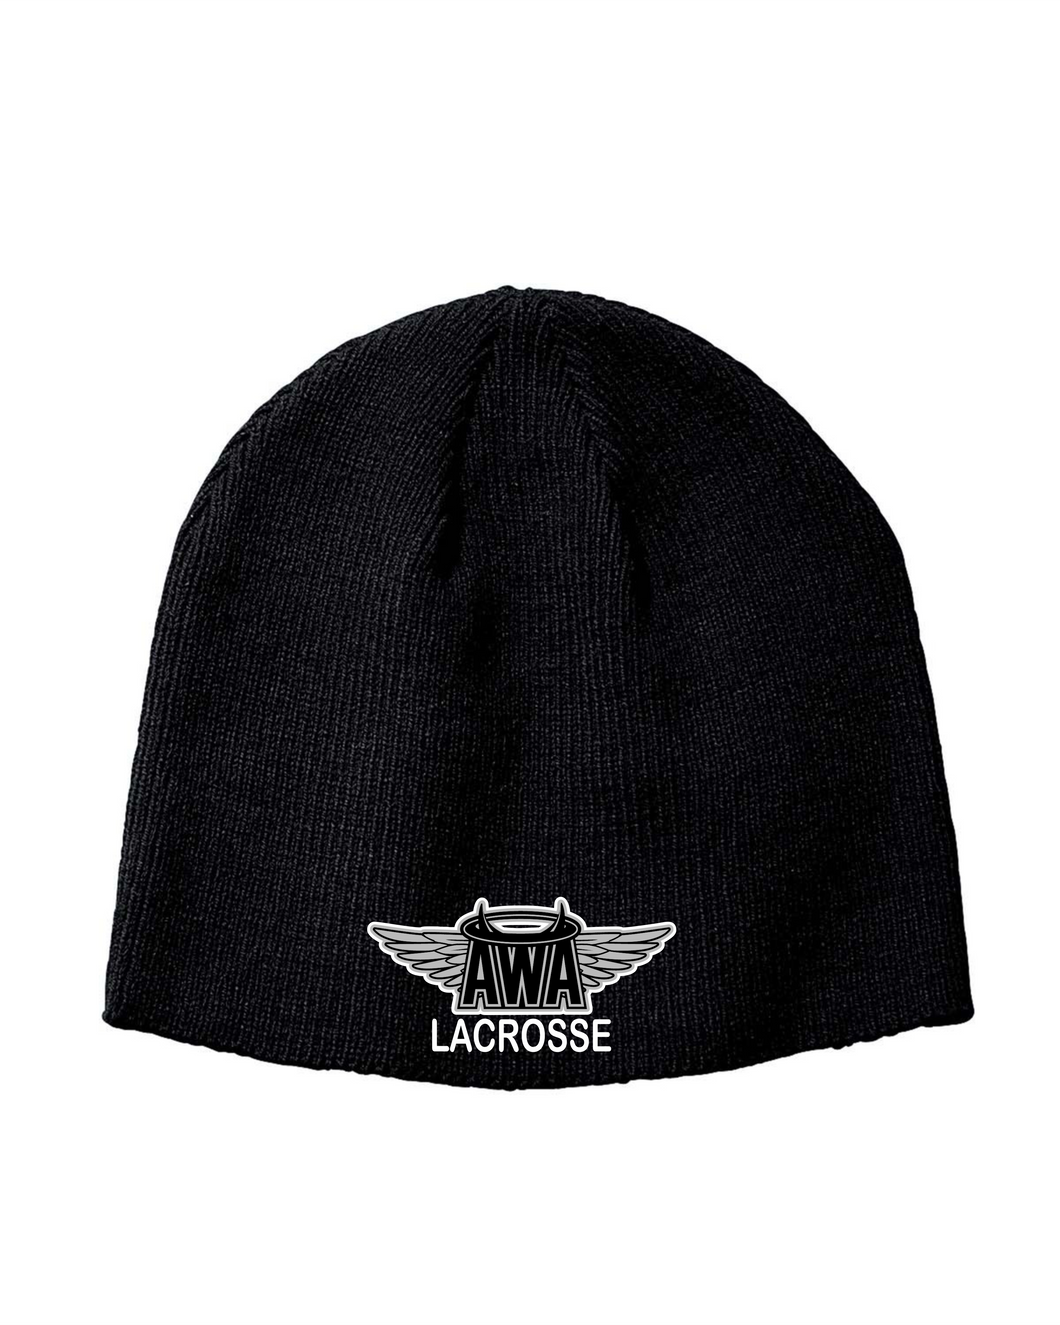 AWA-LAX-906 - Big Accessories Knit Beanie - AWA Girls Lacrosse Logo